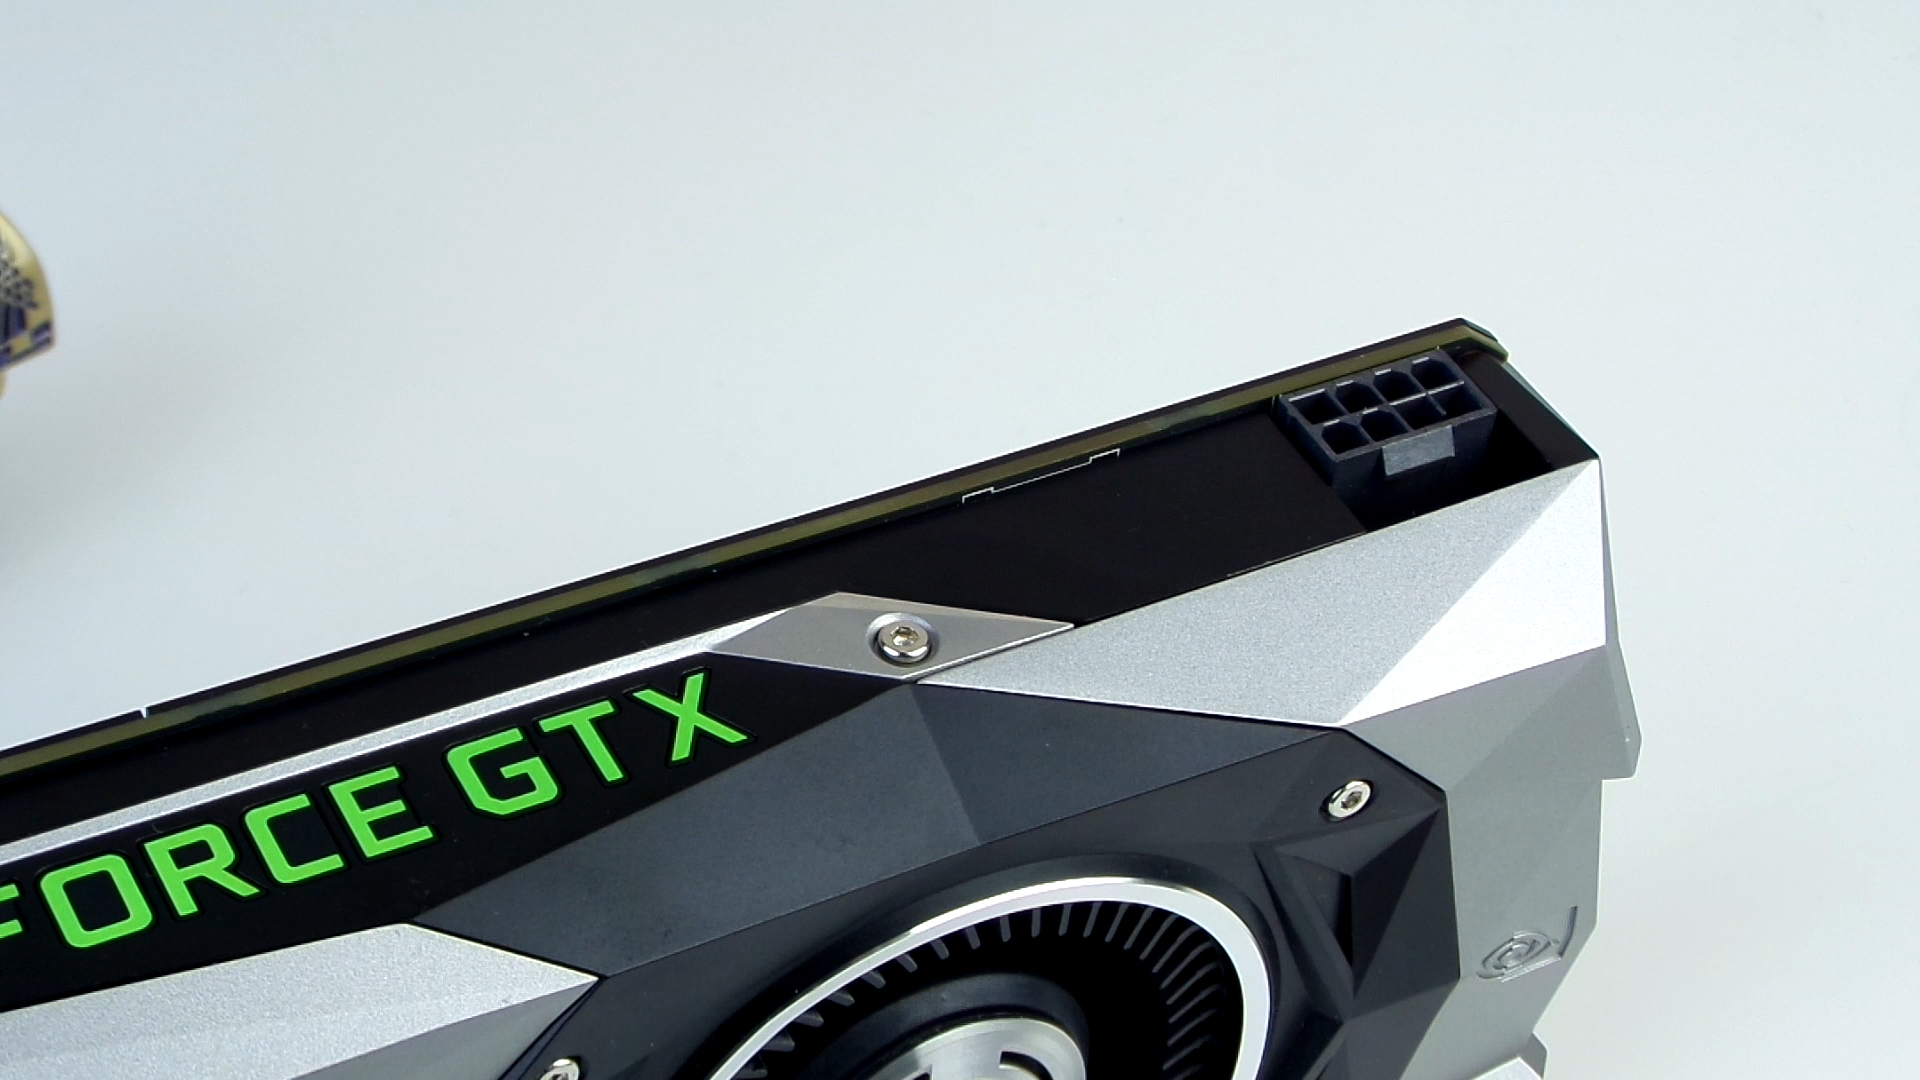 Nvidia GTX1070 Founders Edition incelemesi '1.9GHz'e varan hızıyla başarılı 2K performansı'